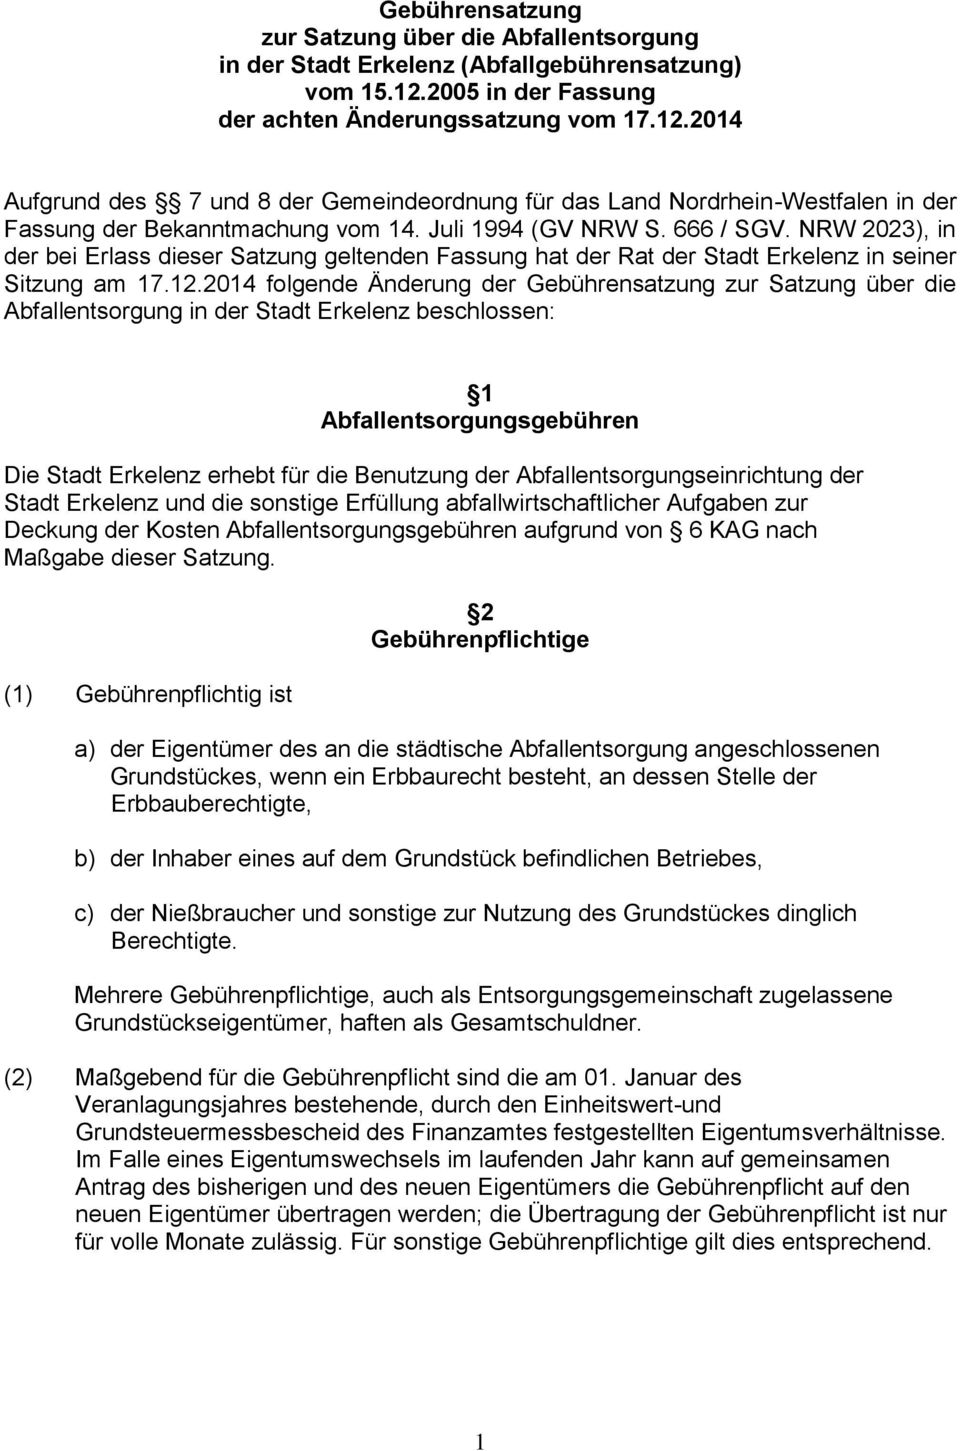 666 / SGV. NRW 2023), in der bei Erlass dieser Satzung geltenden Fassung hat der Rat der Stadt Erkelenz in seiner Sitzung am 17.12.